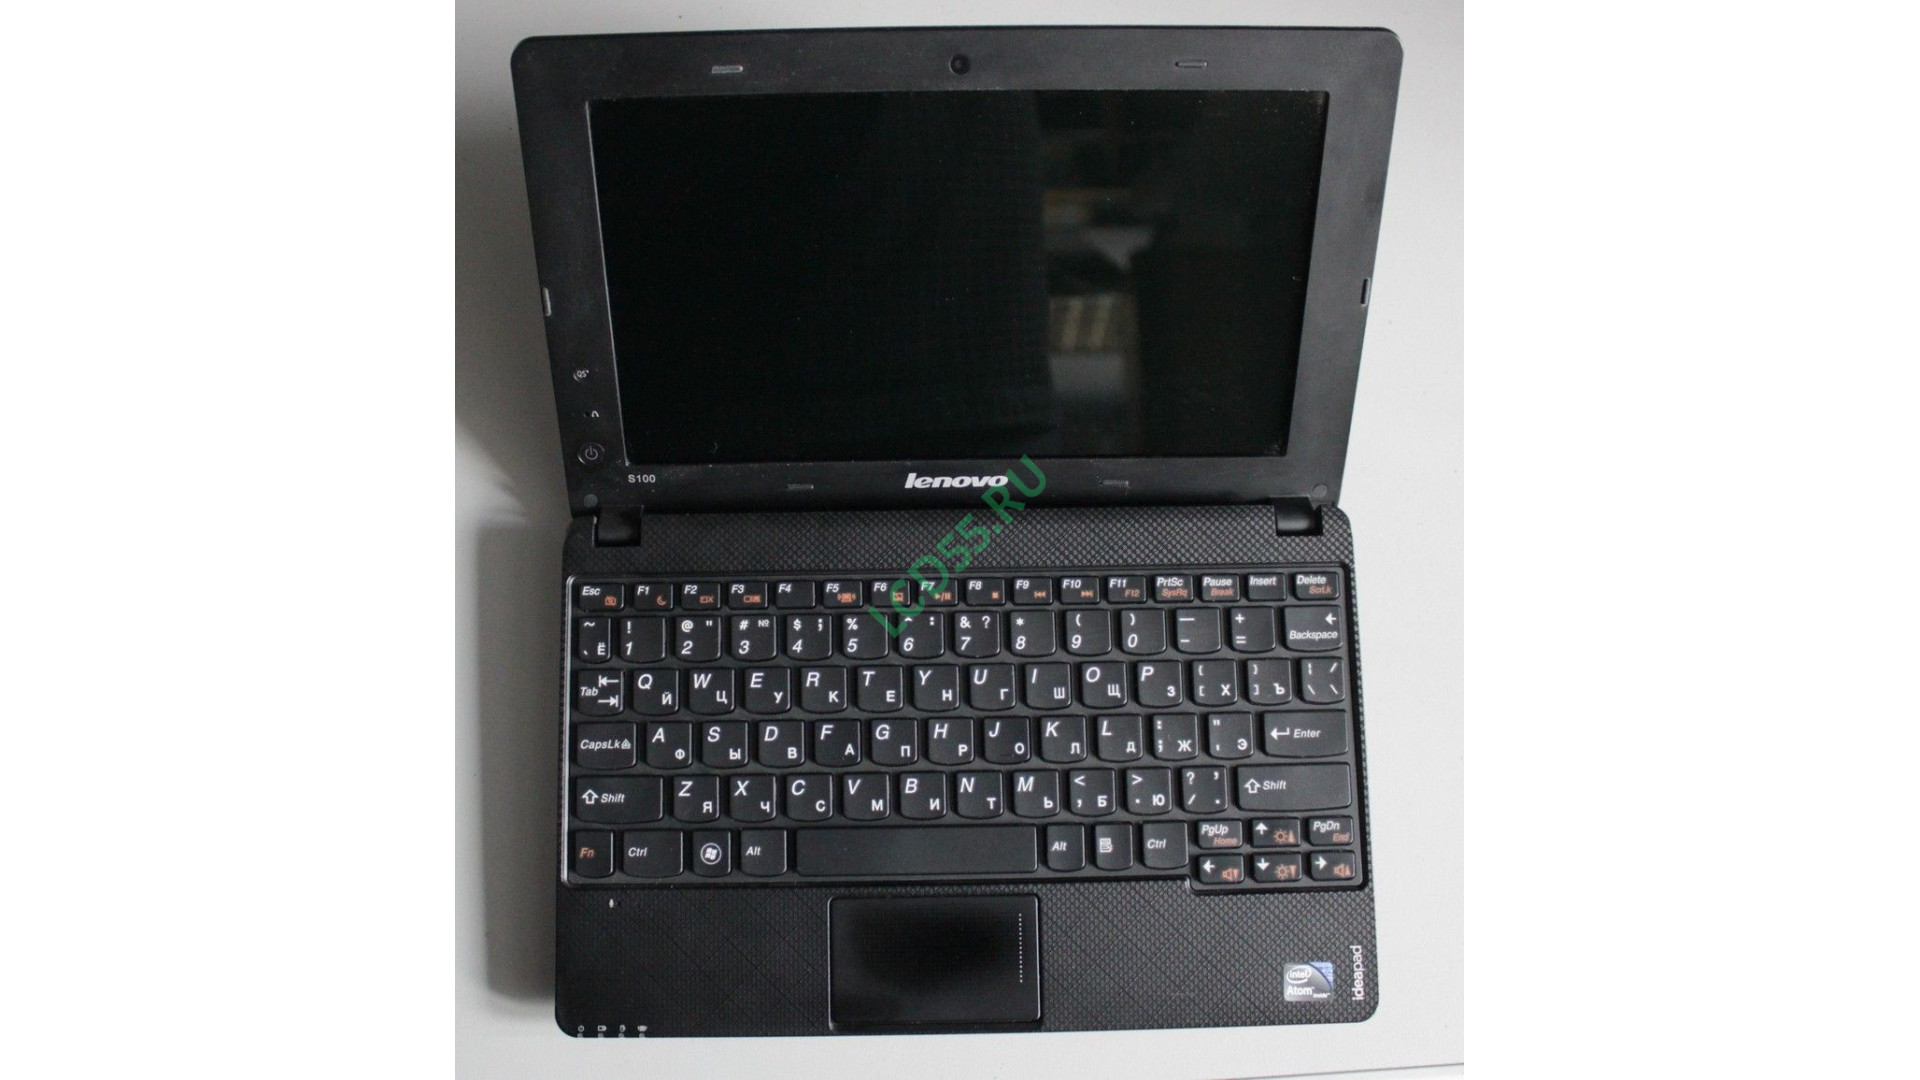 Lenovo IdeaPad S100 (20109)